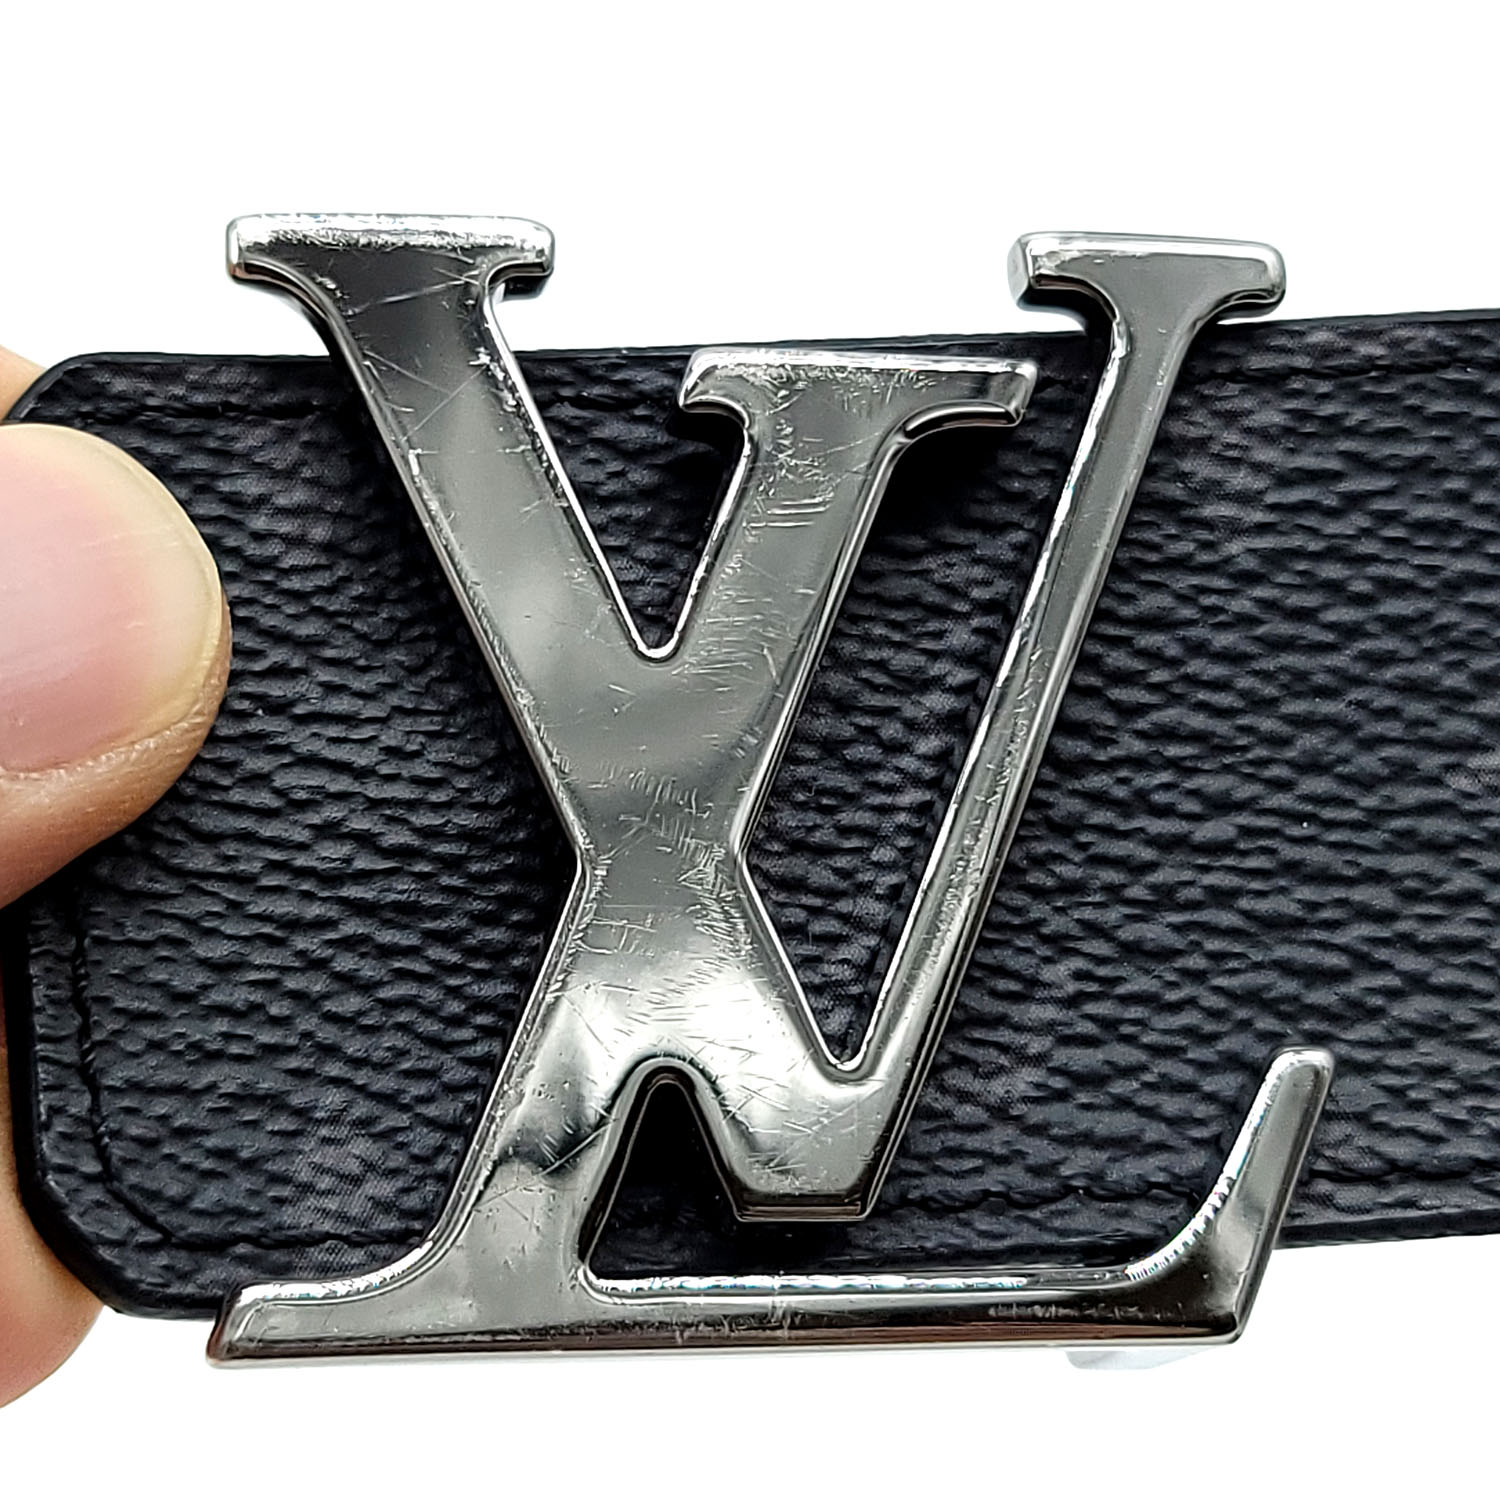 Louis Vuitton Initiales Belt Monogram Eclipse Black/Gray